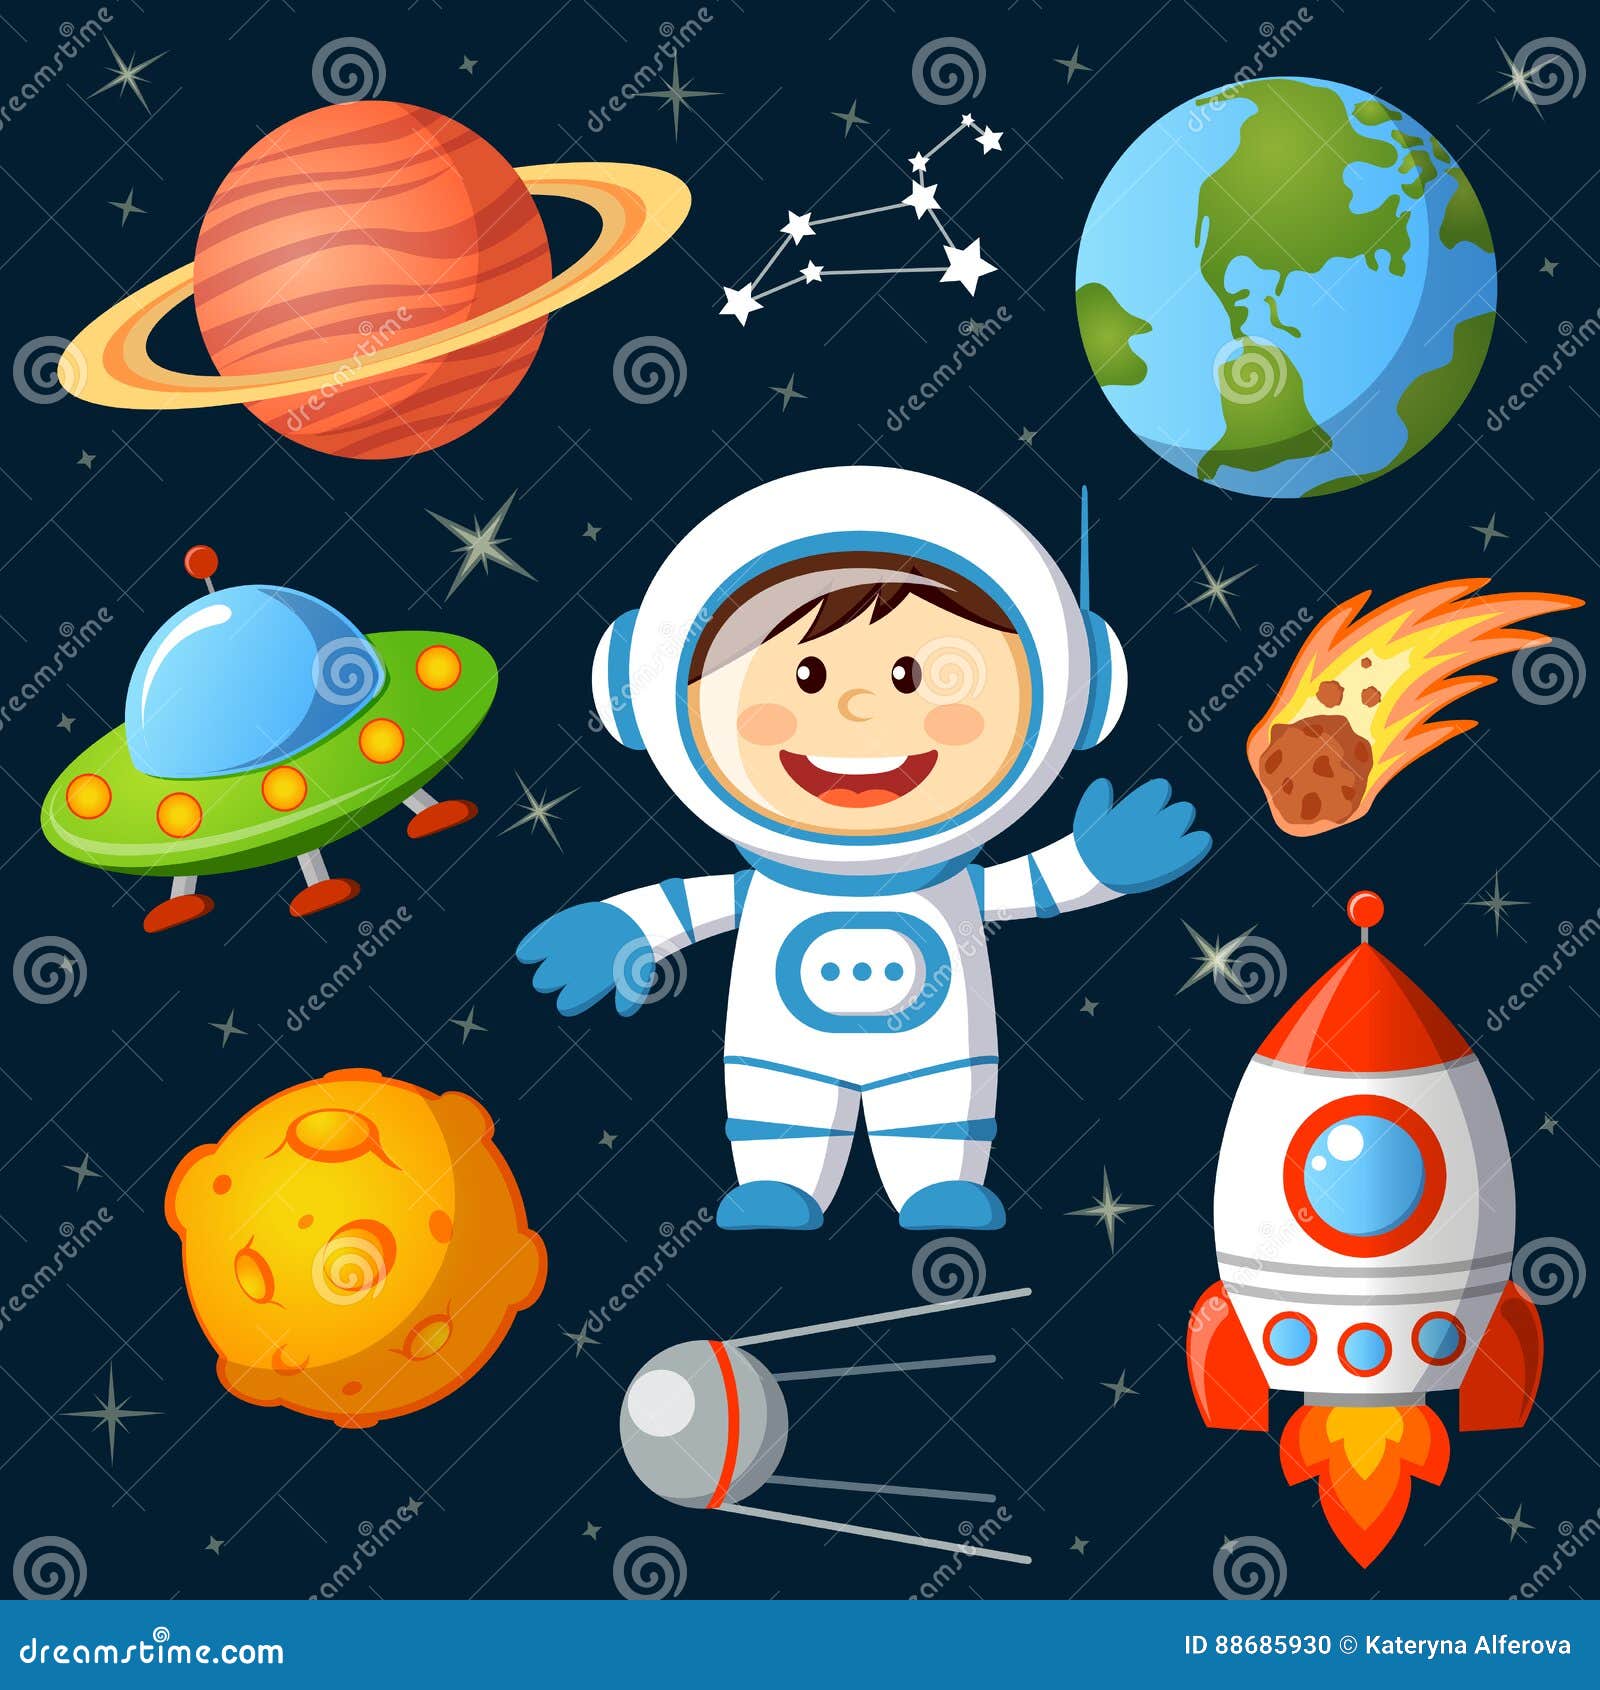 Зарядка космос для детей. Детям о космосе. Космическая тема для детей. Косомсдля дошкольников. Космос для дошкольников.